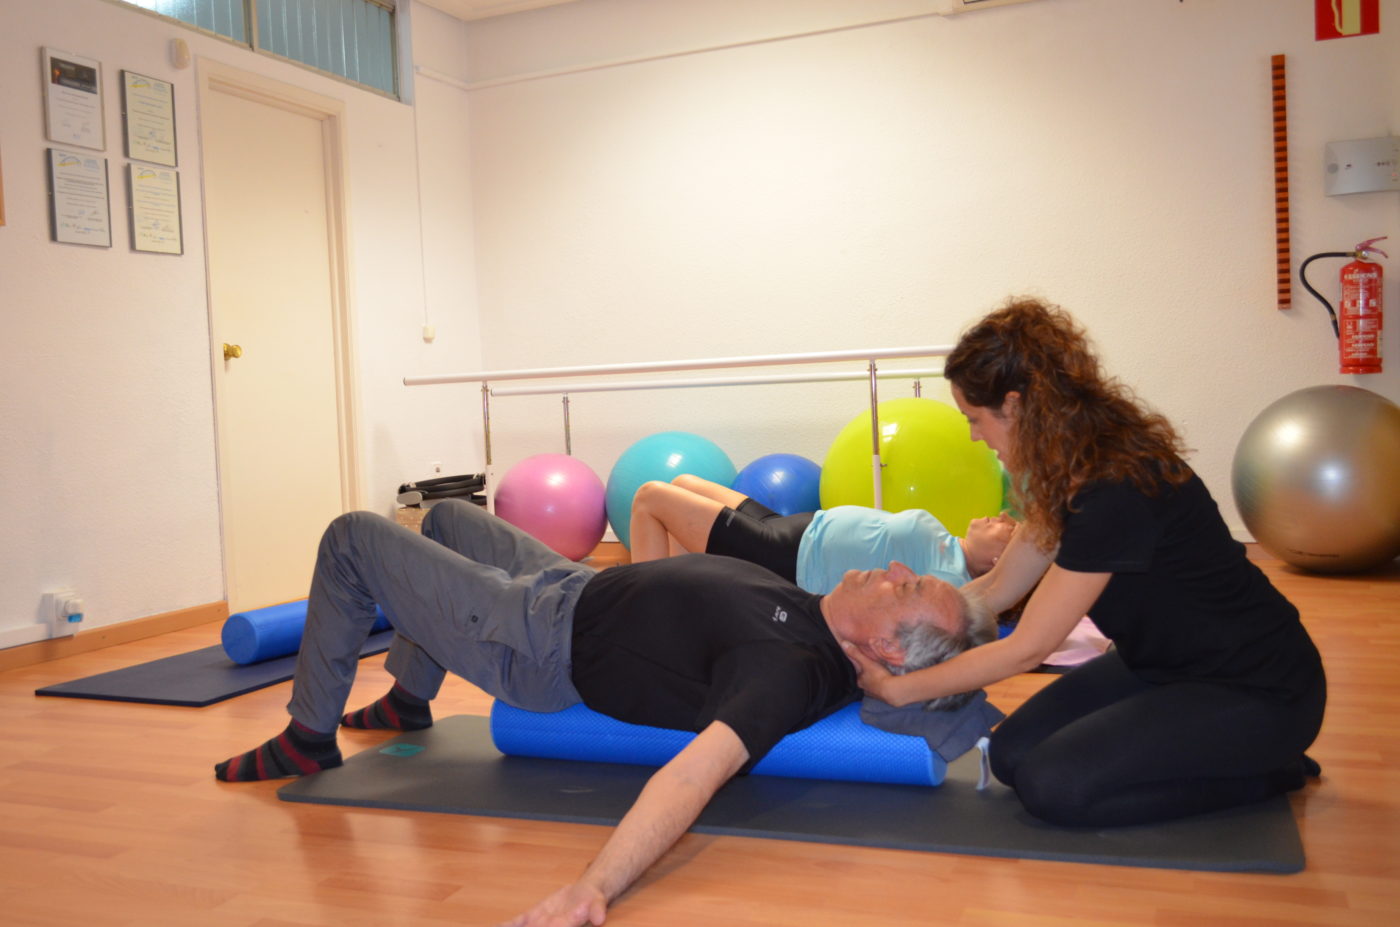 Clase de Pilates Terapéutico impartido por una fisioterapeuta en Rocafort